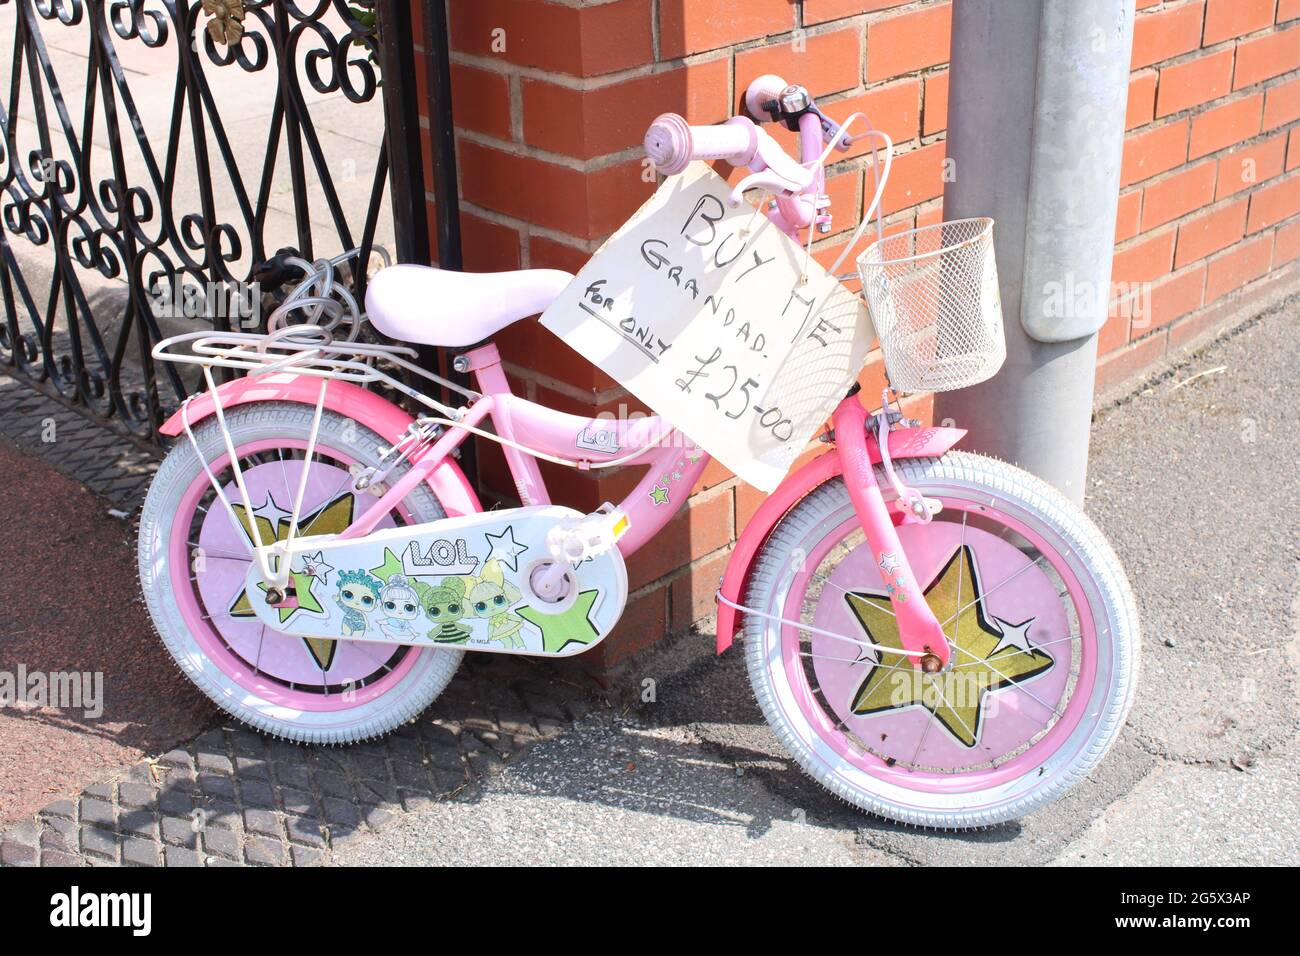 Vélo rose Childs avec signe de vente disant "Acheter mon grand-père pour seulement £25.00". Concept publicitaire intelligent Banque D'Images